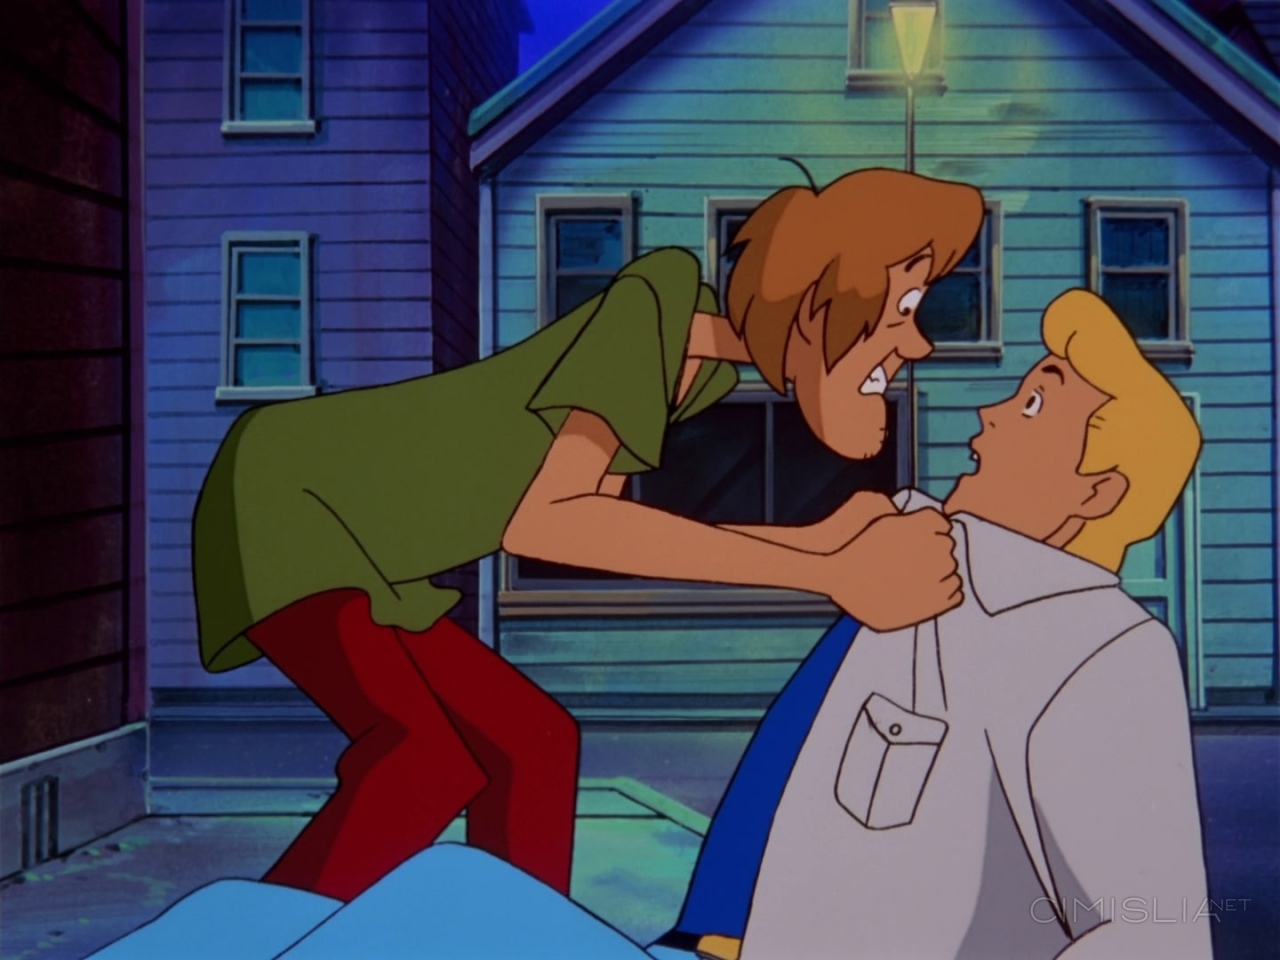 Скуби-Ду и призрак ведьмы / Scooby-Doo and the Witch's Ghost (1999)